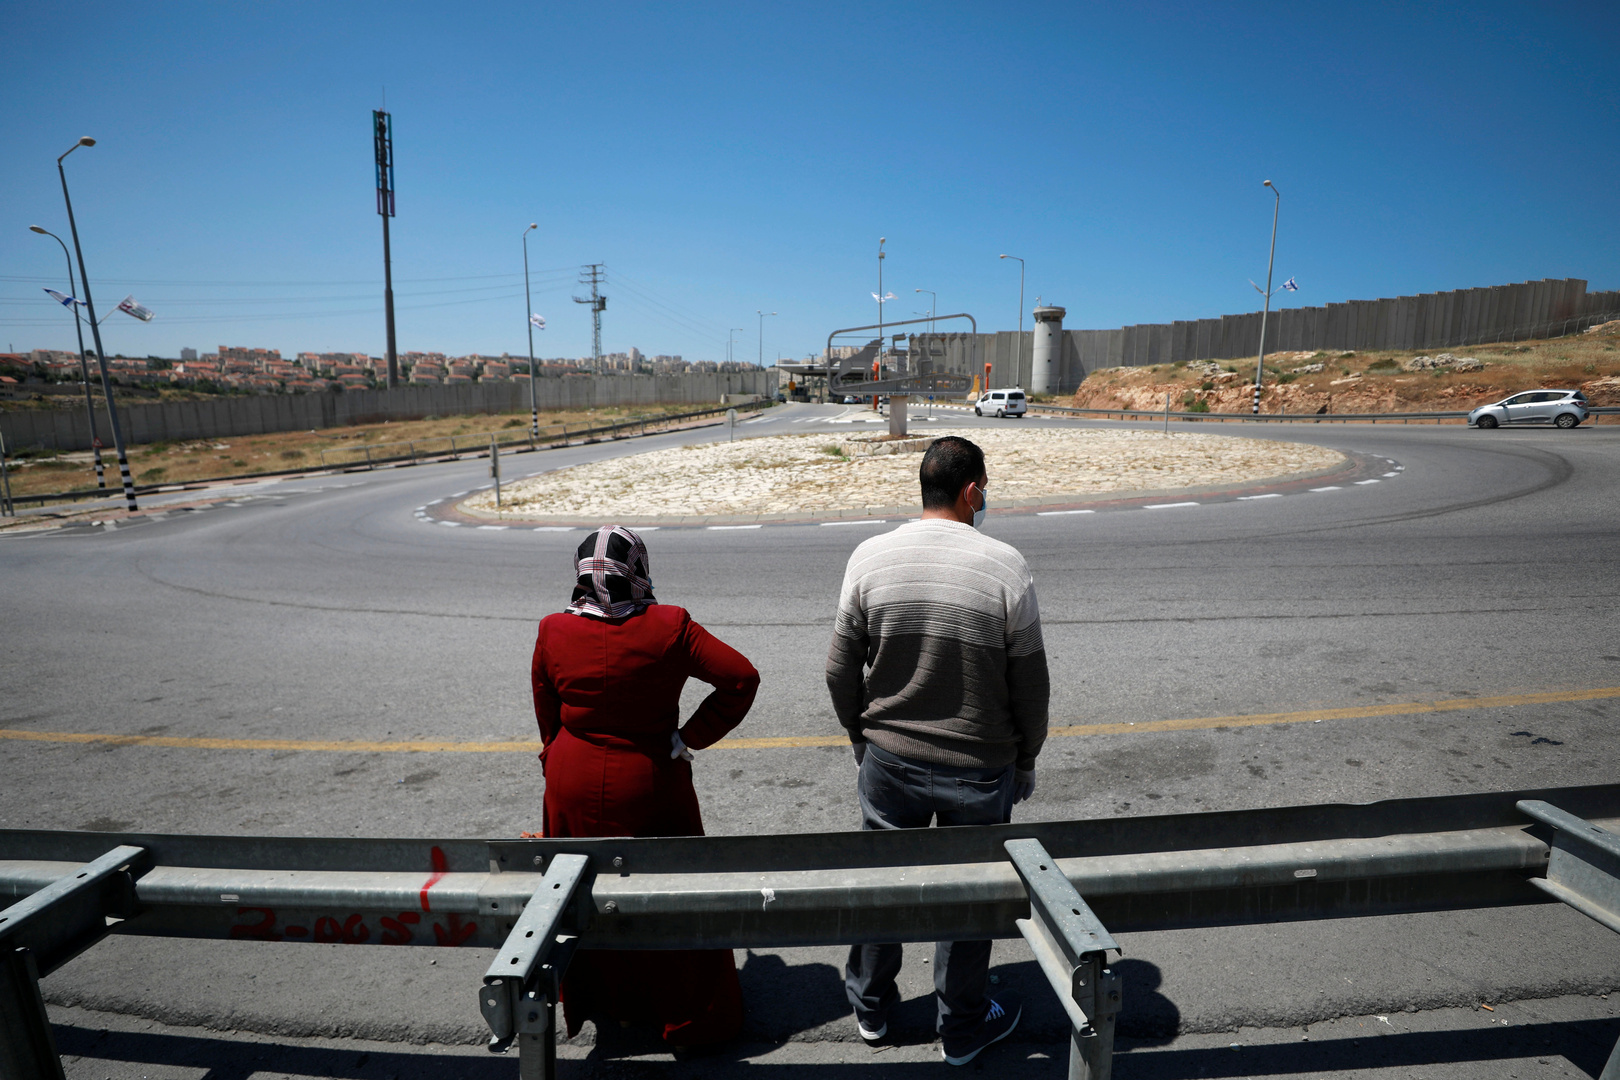 الحكومة الفلسطينية تمدد الإغلاق الشامل مع تفشي كورونا بوتائر قياسية